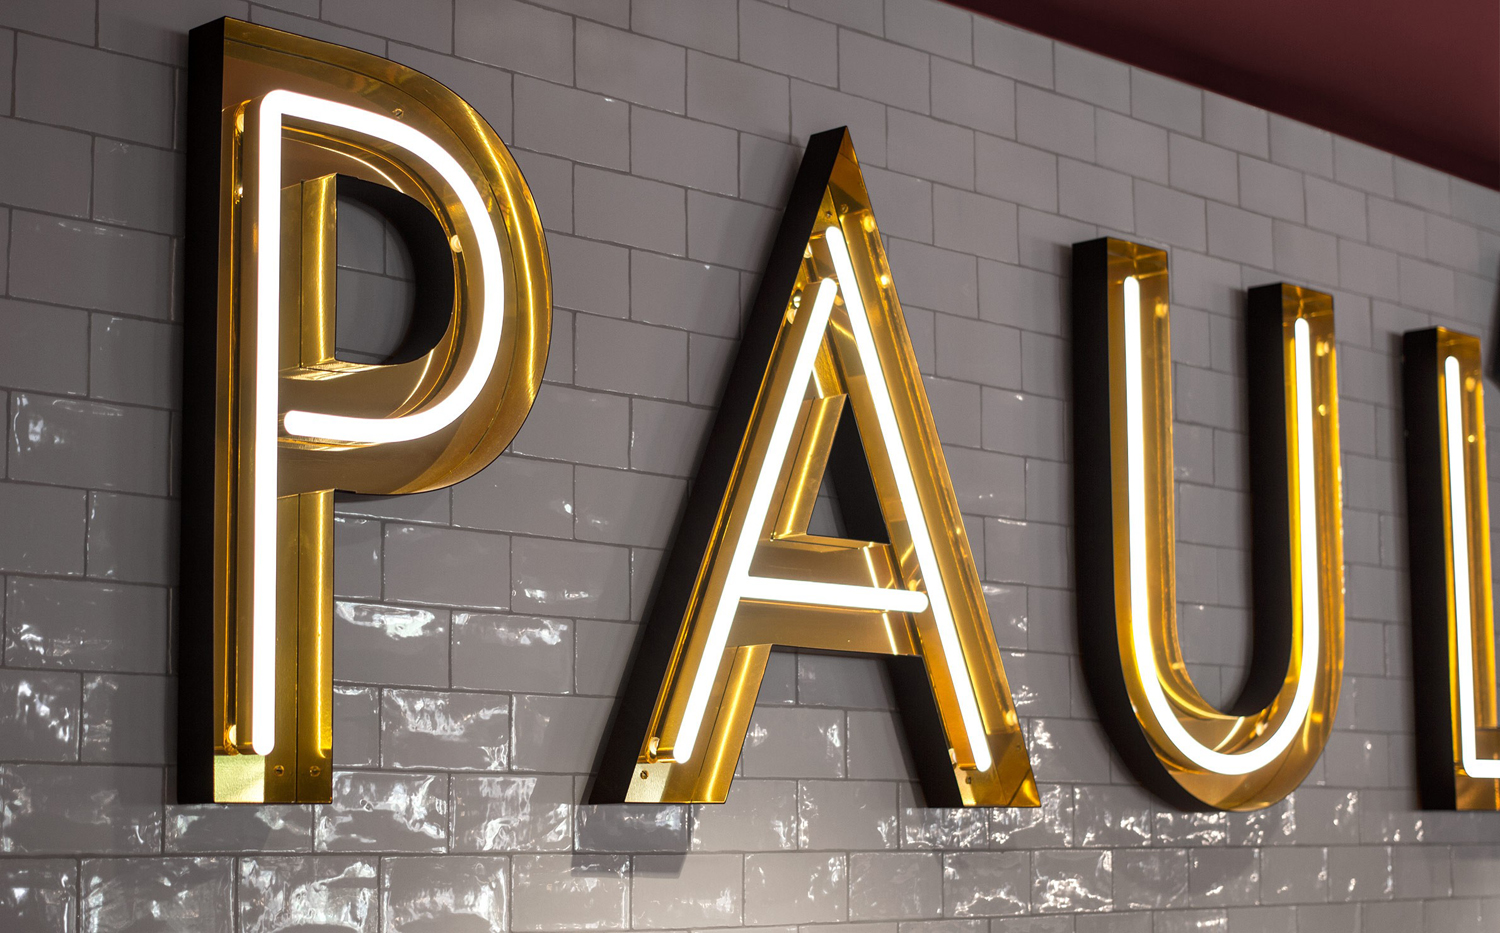 Neon signage for Stockholm-based restaurant Paul's at Haymarket by 25AH, Sweden